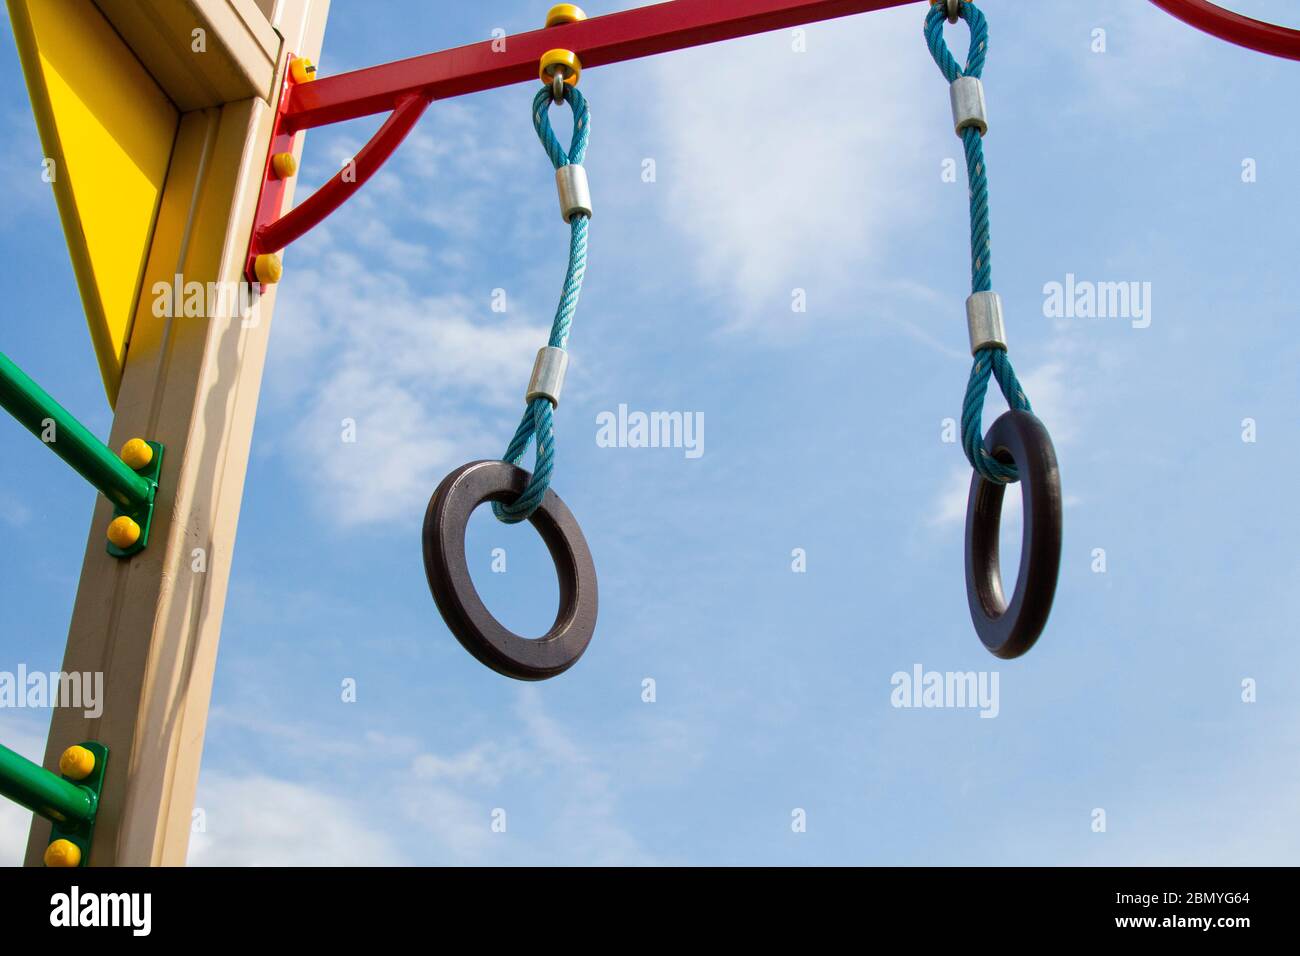 Des anneaux de gymnastique sont suspendus sur l'aire de jeux, sur la barre horizontale. Contre le ciel bleu. Banque D'Images